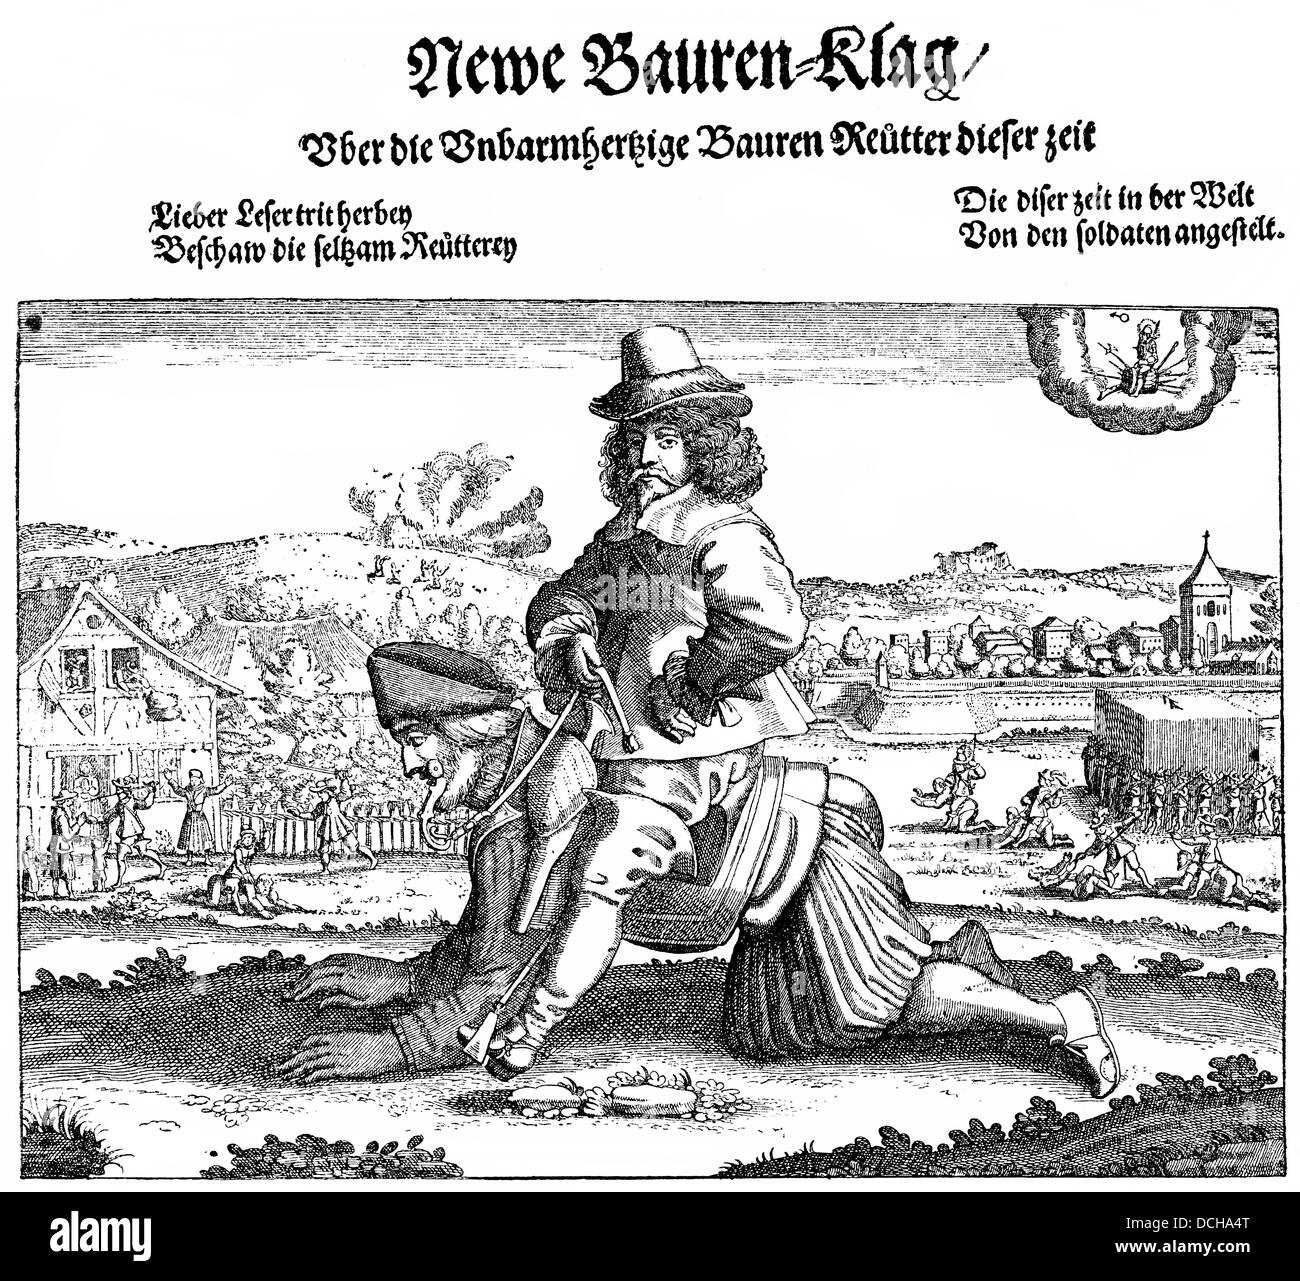 Landwirt Reiter, ein satirisches Pamphlet Dreißigjährigen Krieg, 17. Jahrhundert Stockfoto